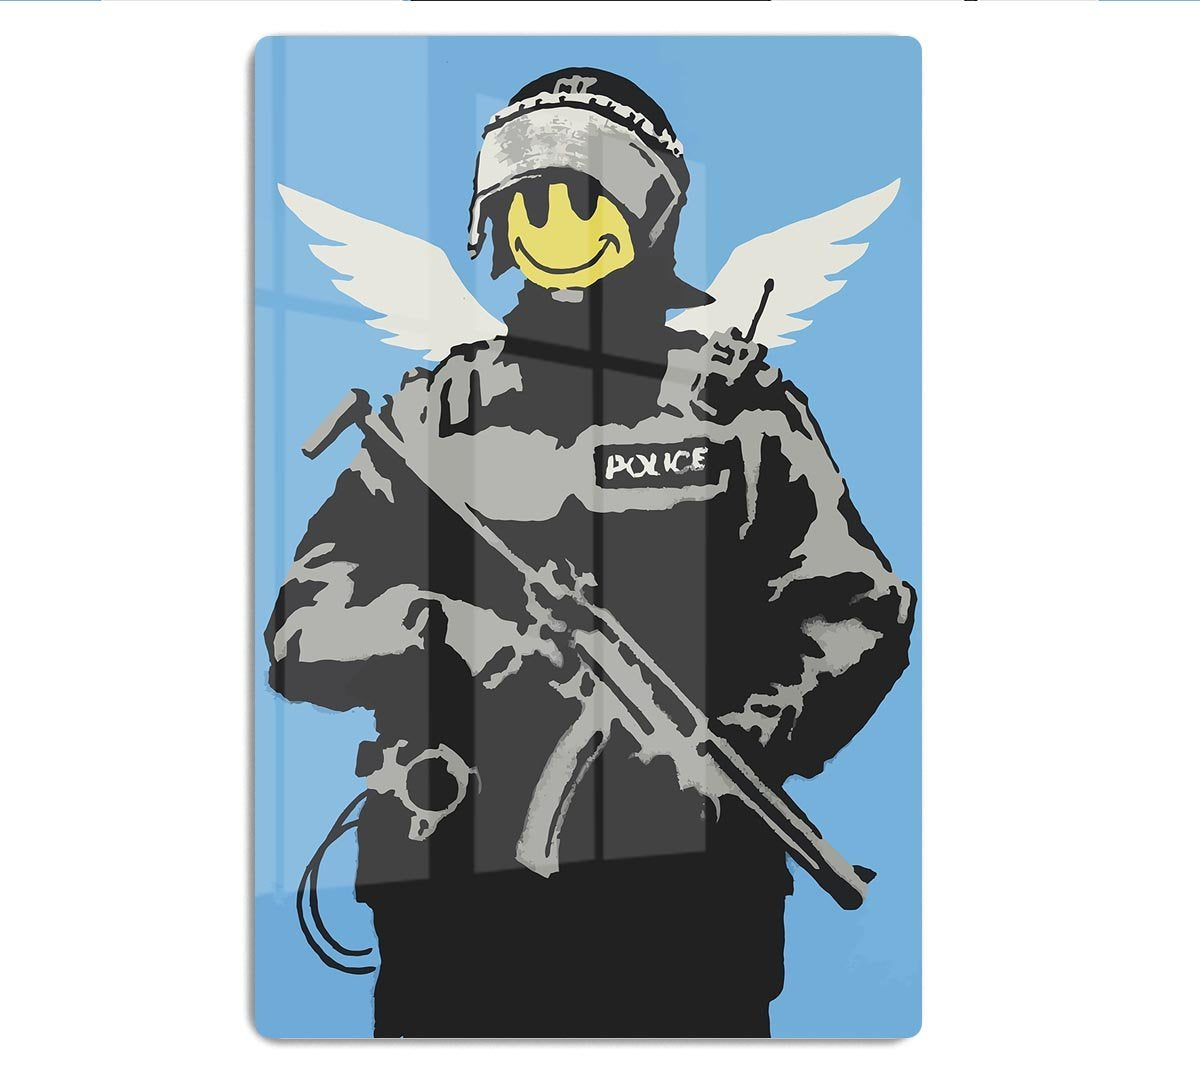 Banksy Smiley Angel Policeman HD Metal Print